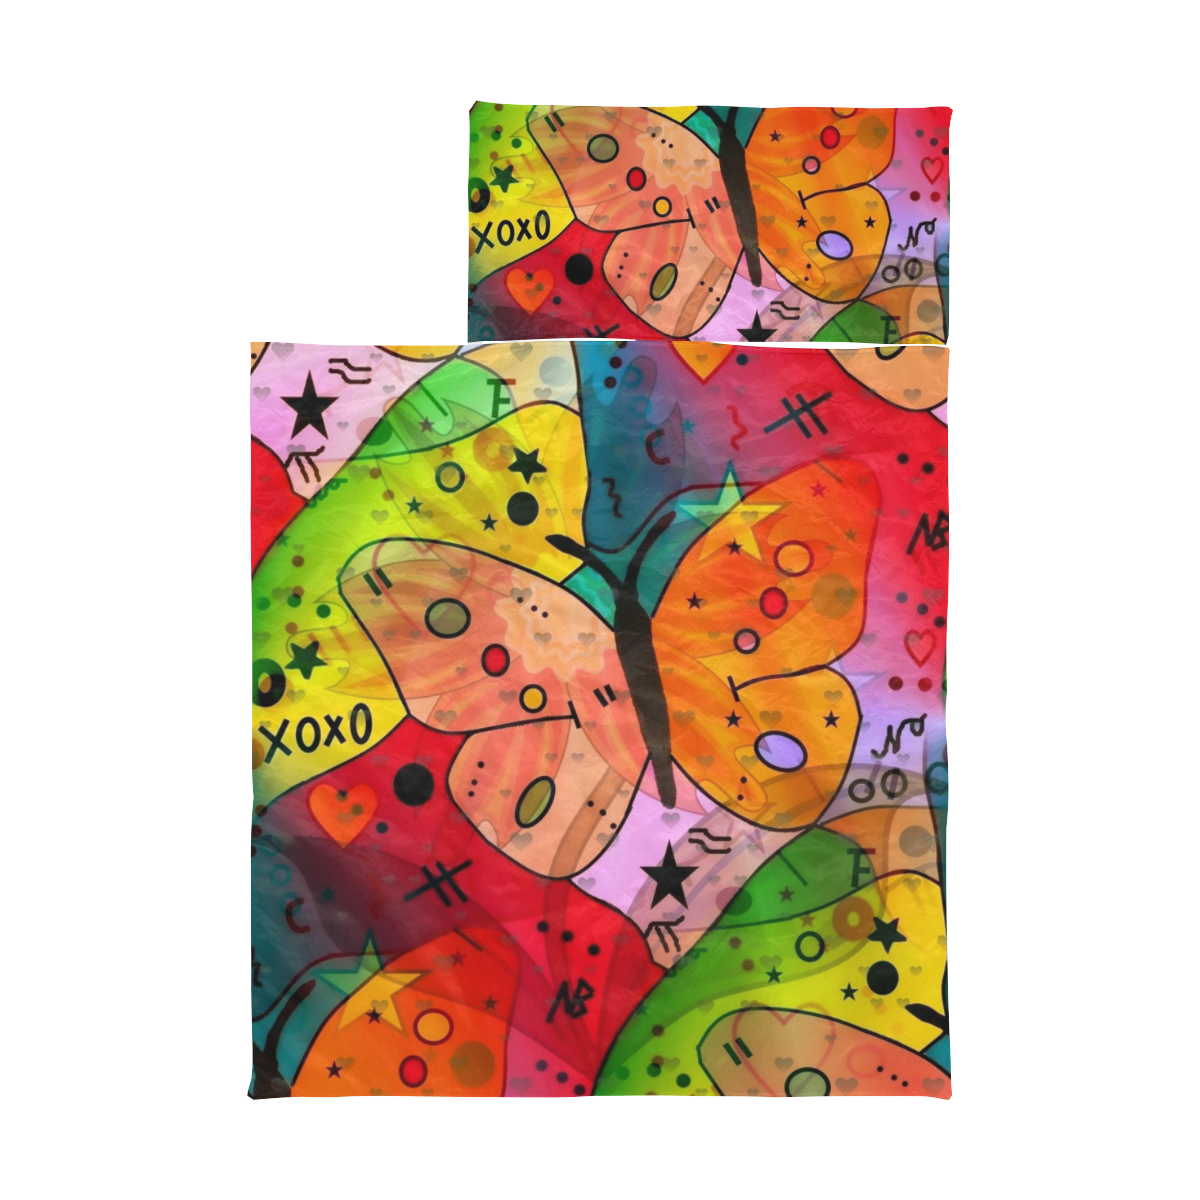 Butterfly Pop Art by Nico Bielow Kids' Sleeping Bag